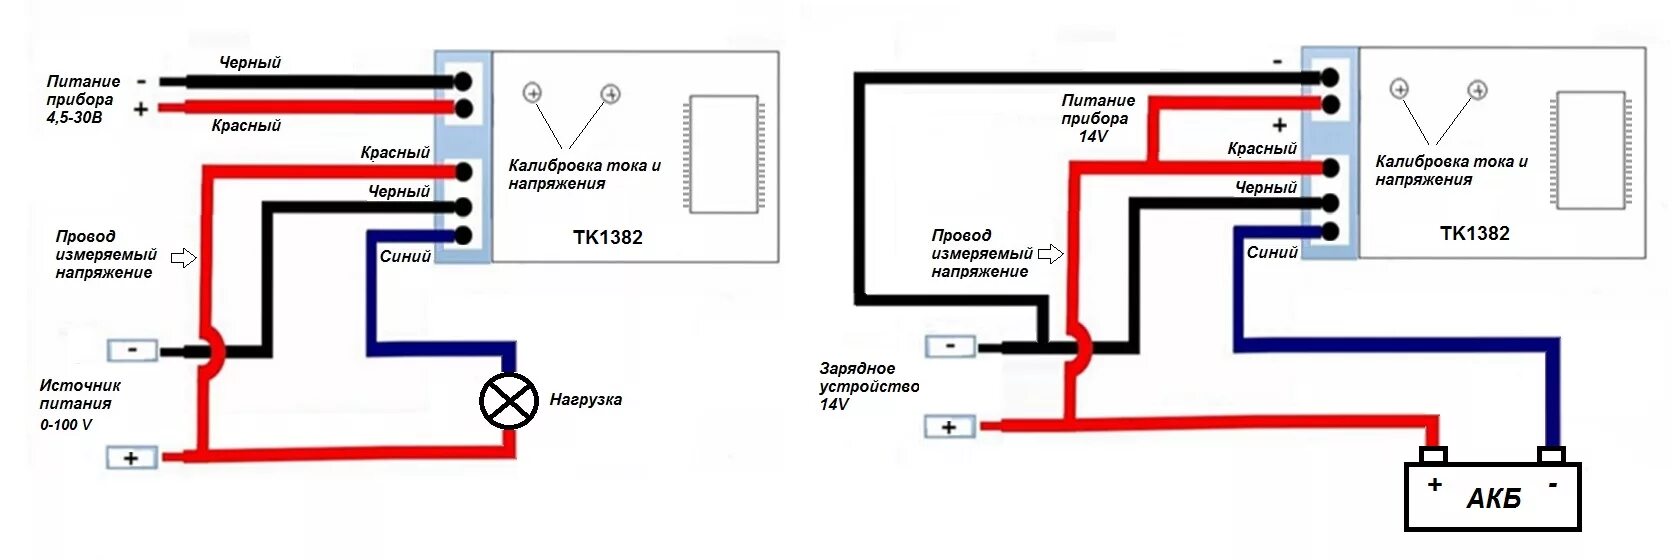 Lctws005 как подключить. Схема подключения ампервольтметра к зарядному устройству. Схема подключения китайского вольтметра амперметра DSN-vc288. WR-005 вольтметр амперметр схема подключения к зарядке. Вольтамперметр m3430 схема подключения.